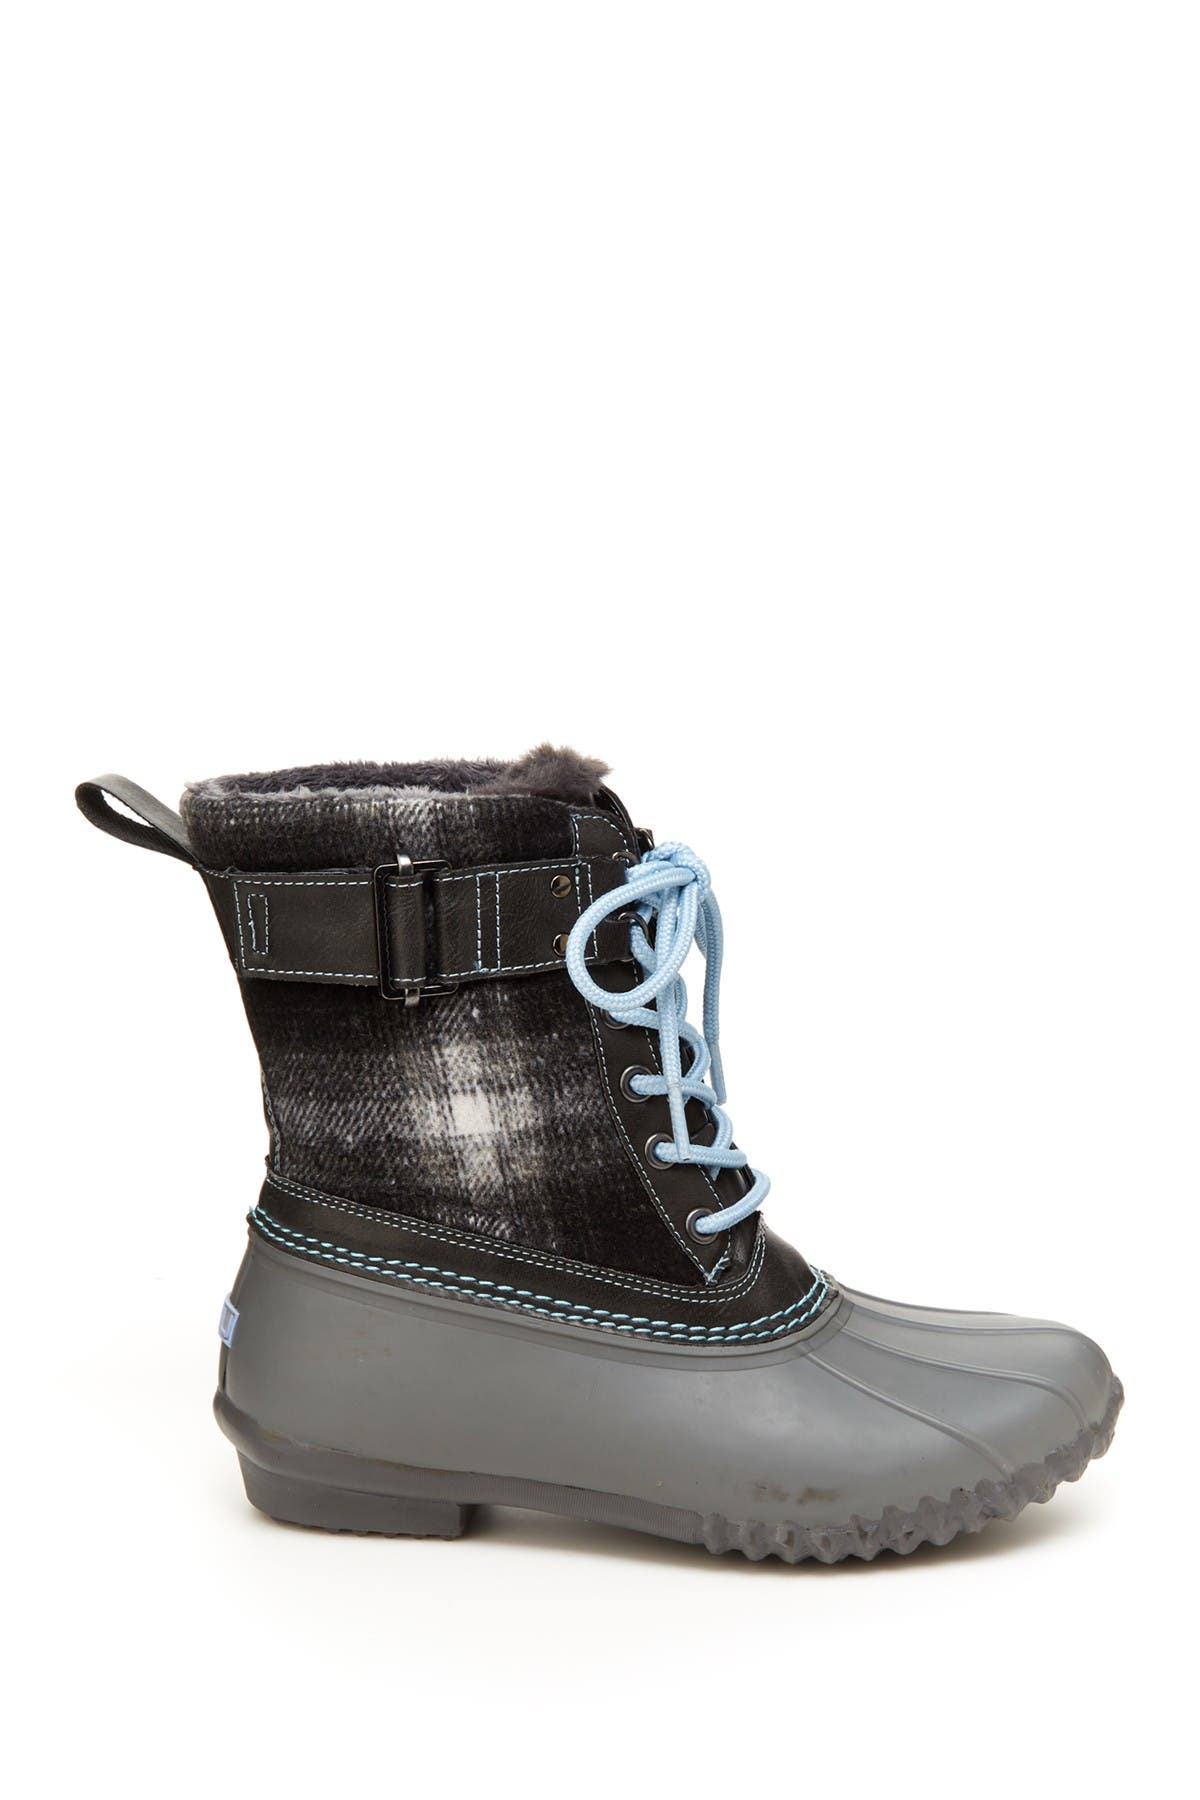 jbu boots waterproof